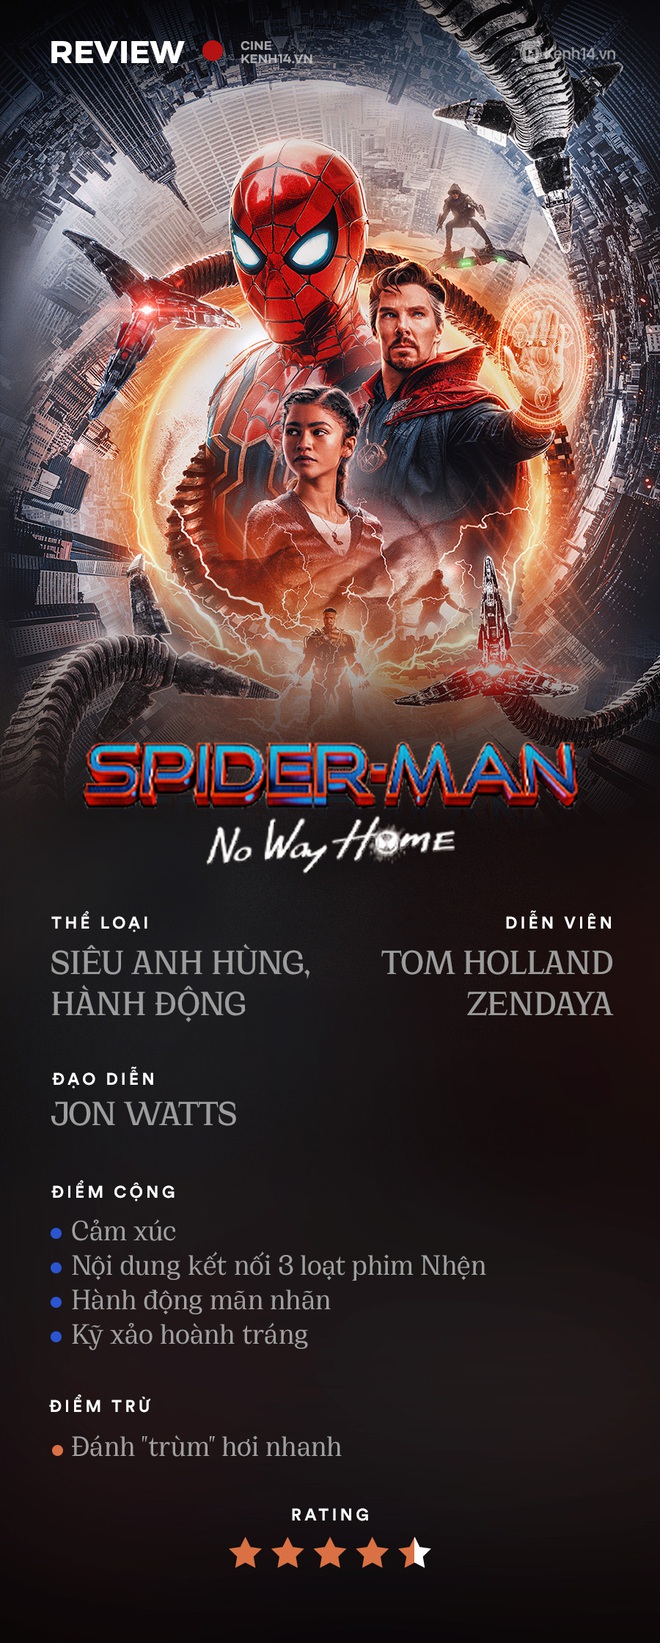 Spider-Man: No Way Home - Phim siêu anh hùng cảm xúc, sững sờ nhất Marvel, khóc thút thít rồi lại hú hét chỉ trong chớp mắt - Ảnh 10.